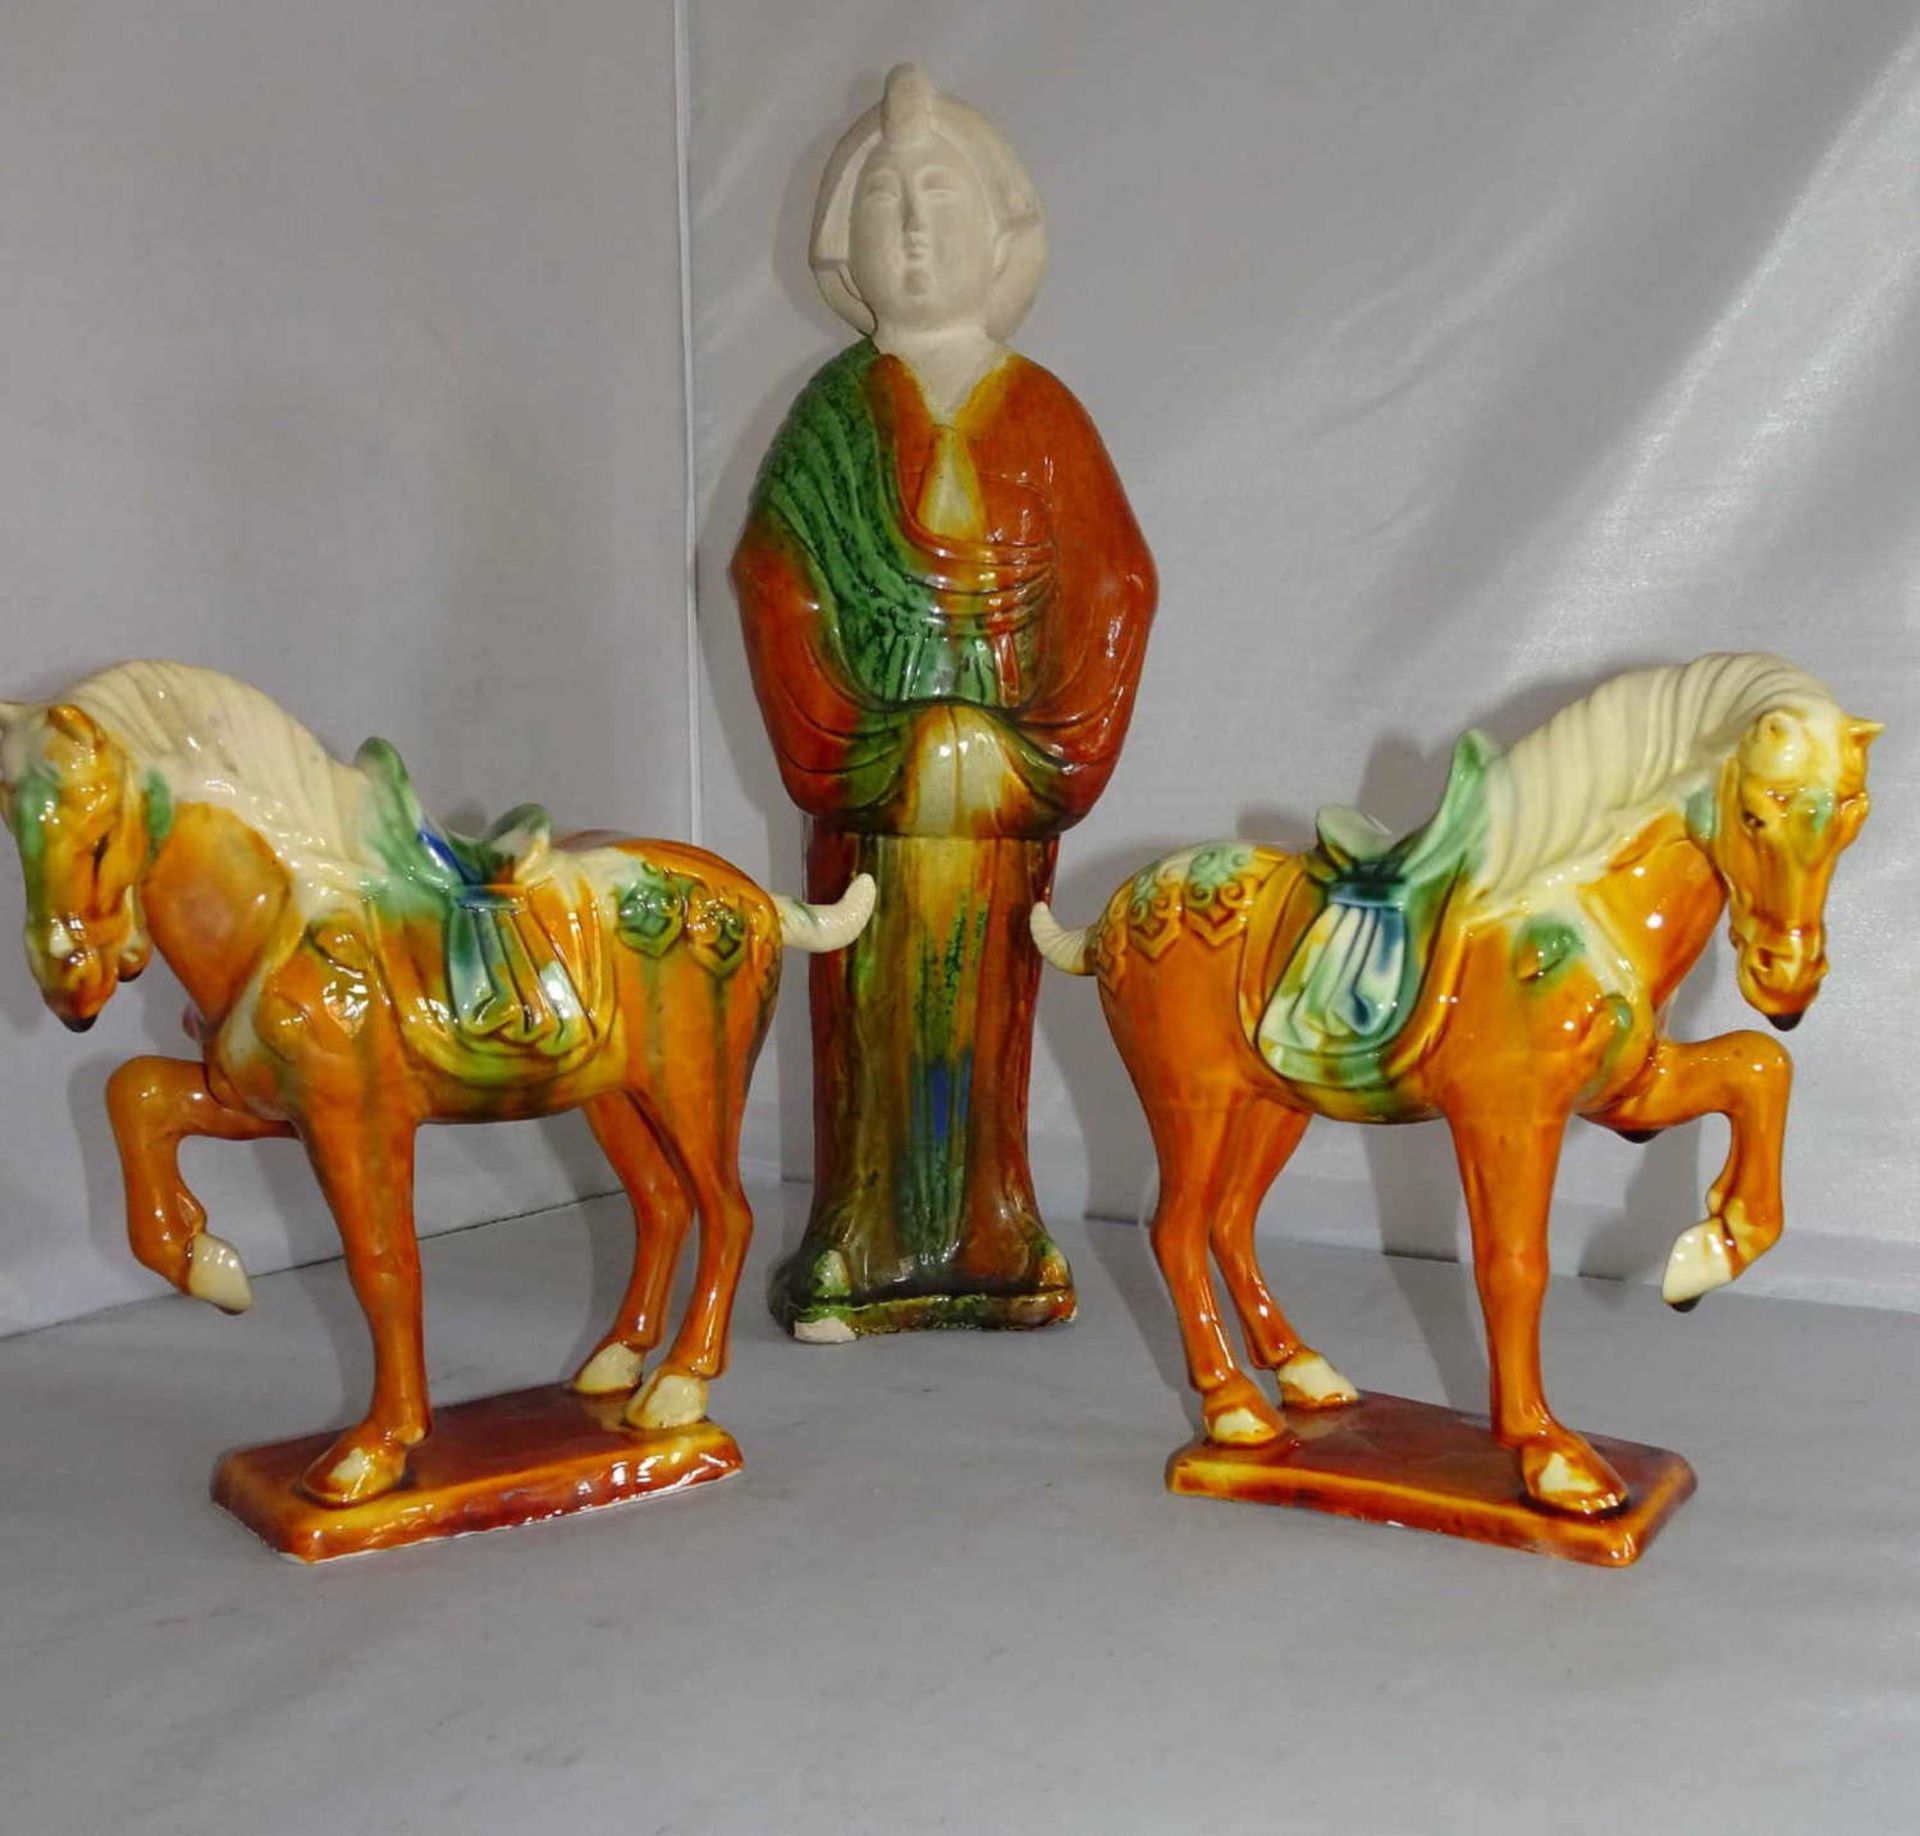 China, 3 dekorative Tonfiguren im Stil der Tang Dynastie mit sogenannter Saneai Glasur (3-Farben-